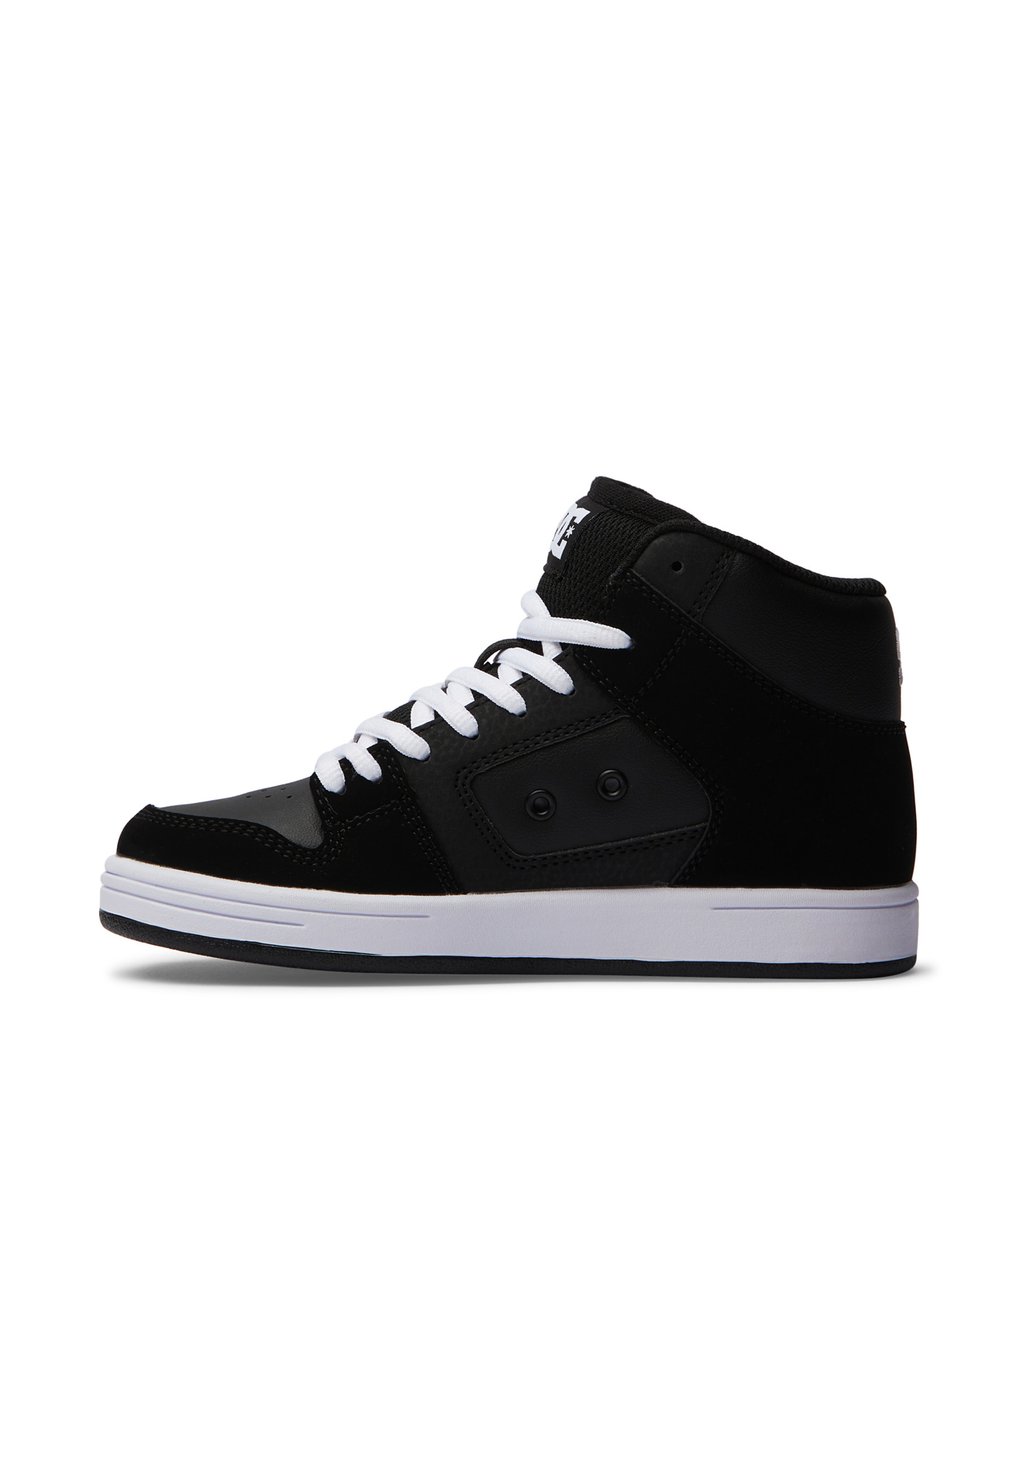 Кроссовки высокие MANTECA 4 HI DC Shoes, цвет black/black/white цена и фото